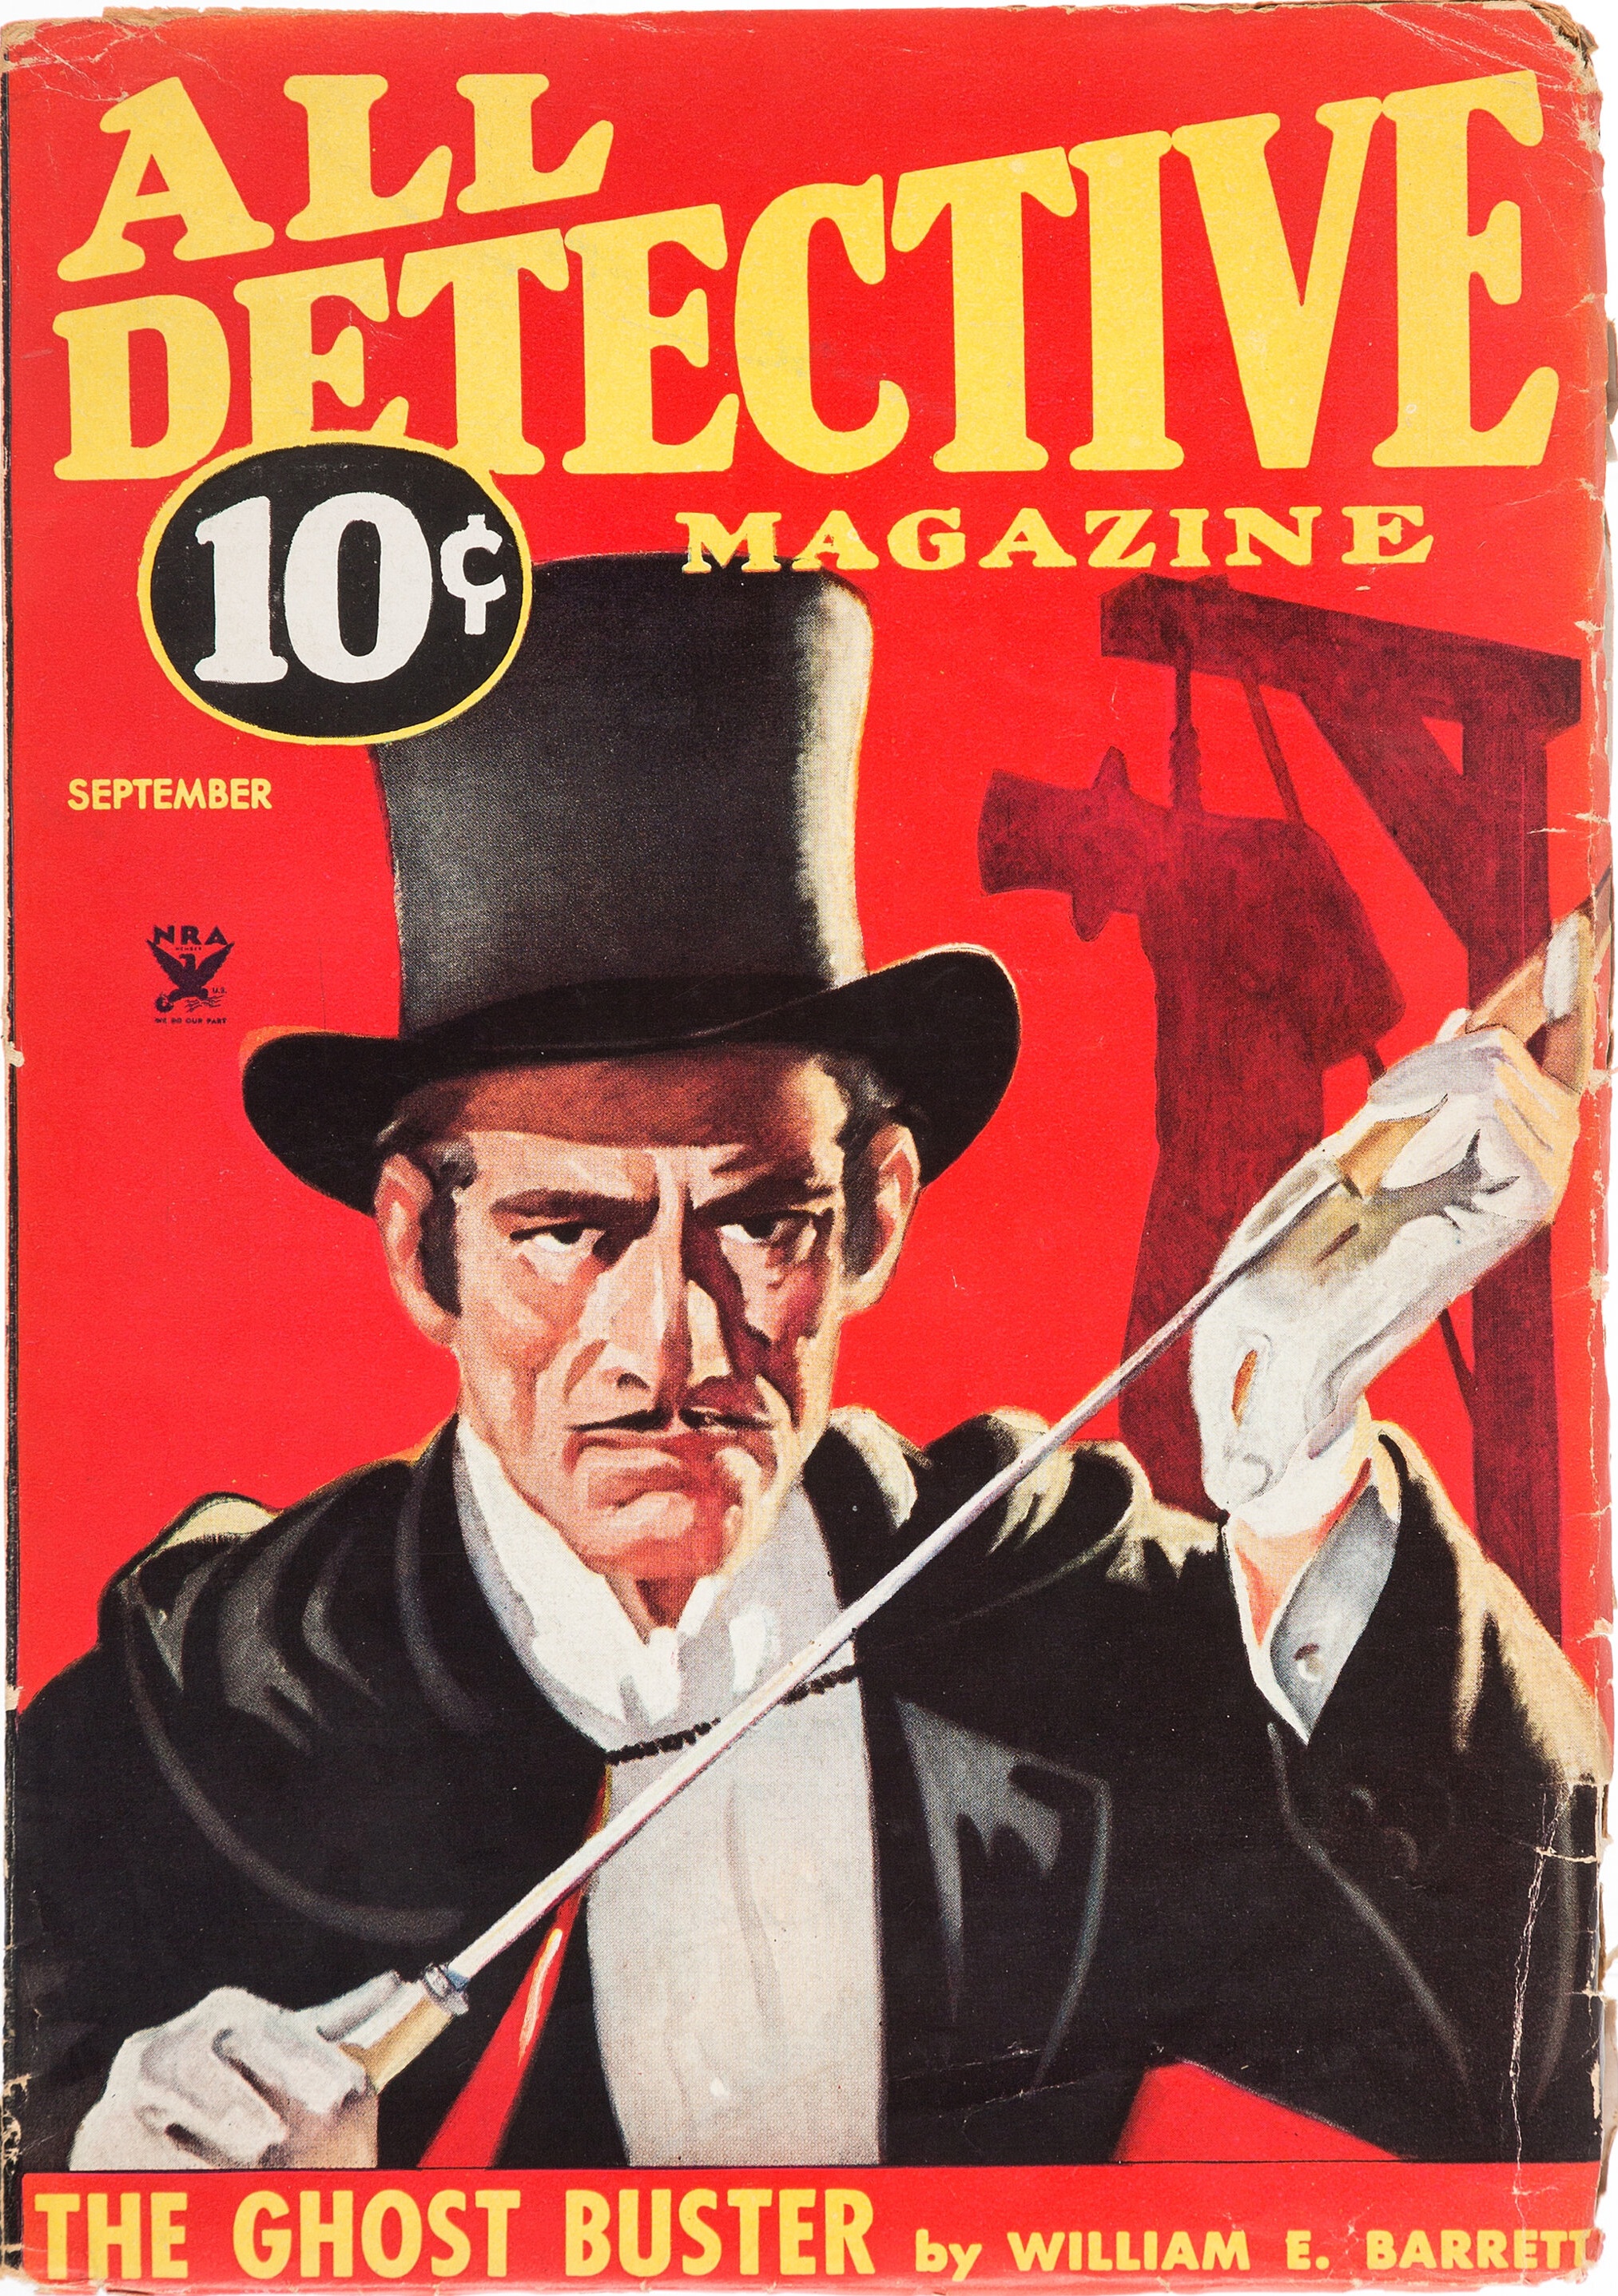 All Detective Magazine - September 1934